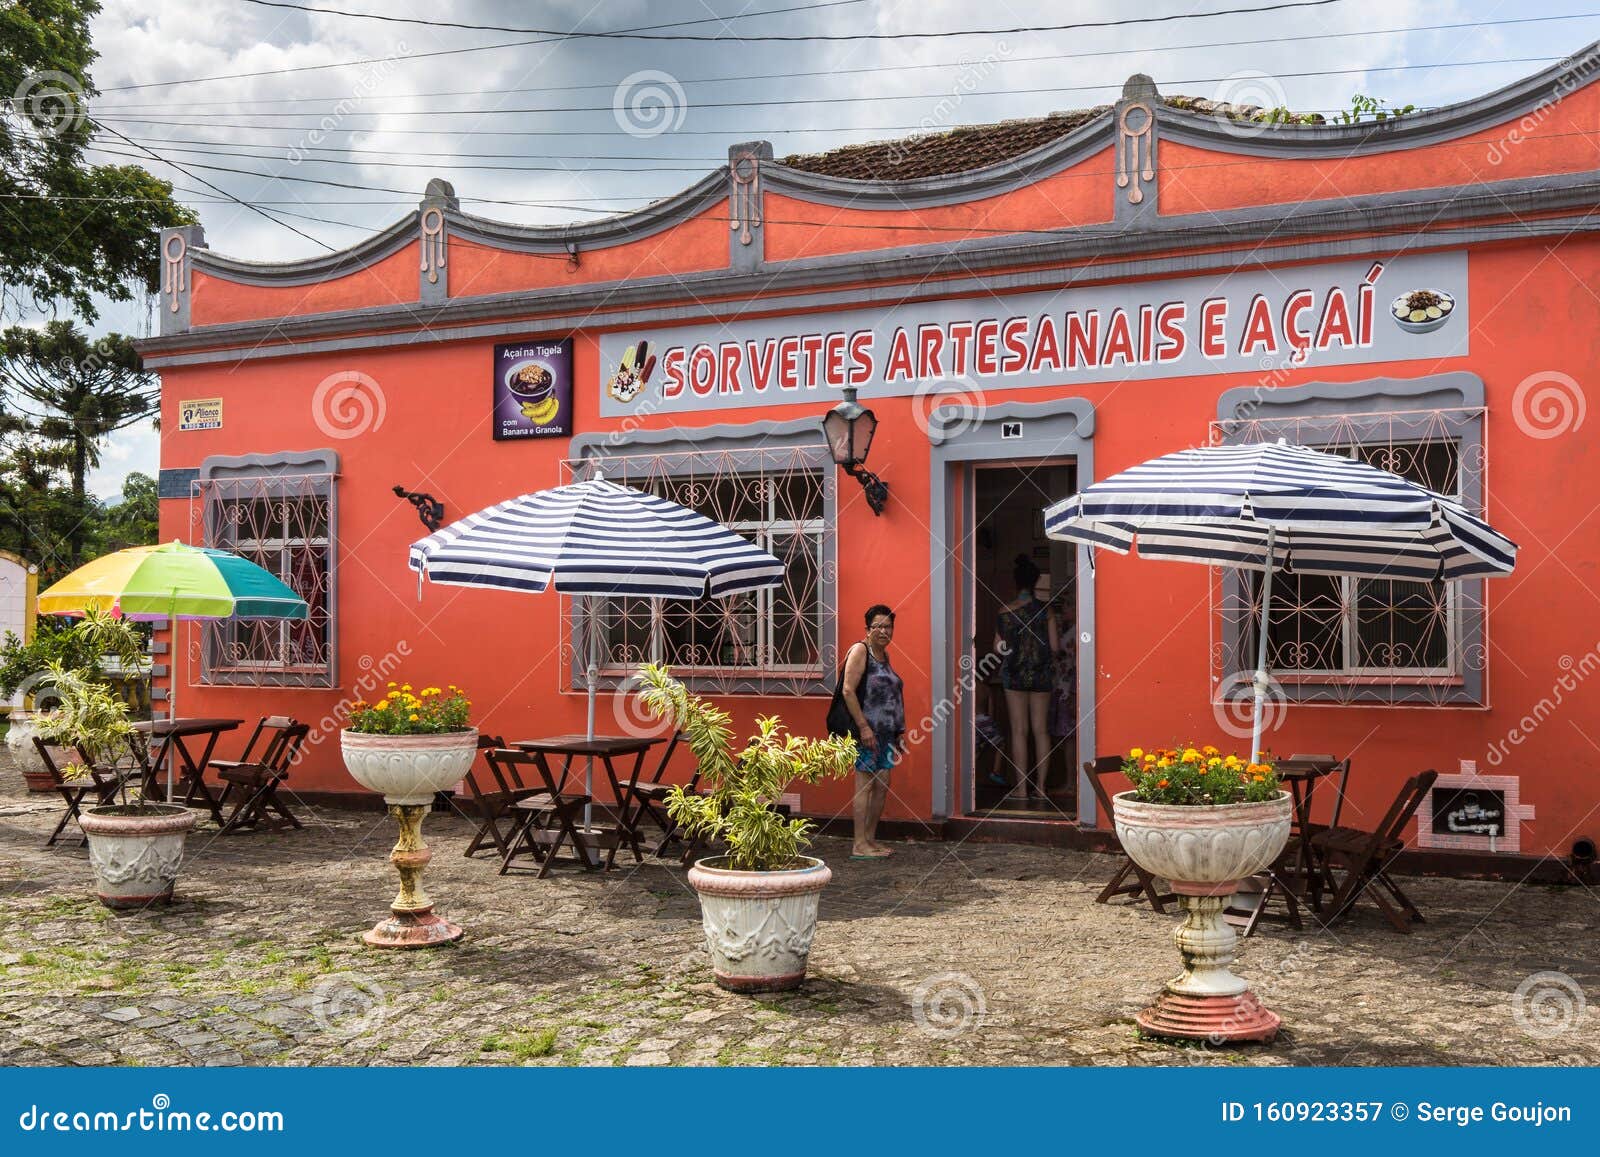 ice cream bar in morretes, in the mata atlantica region of paranagua